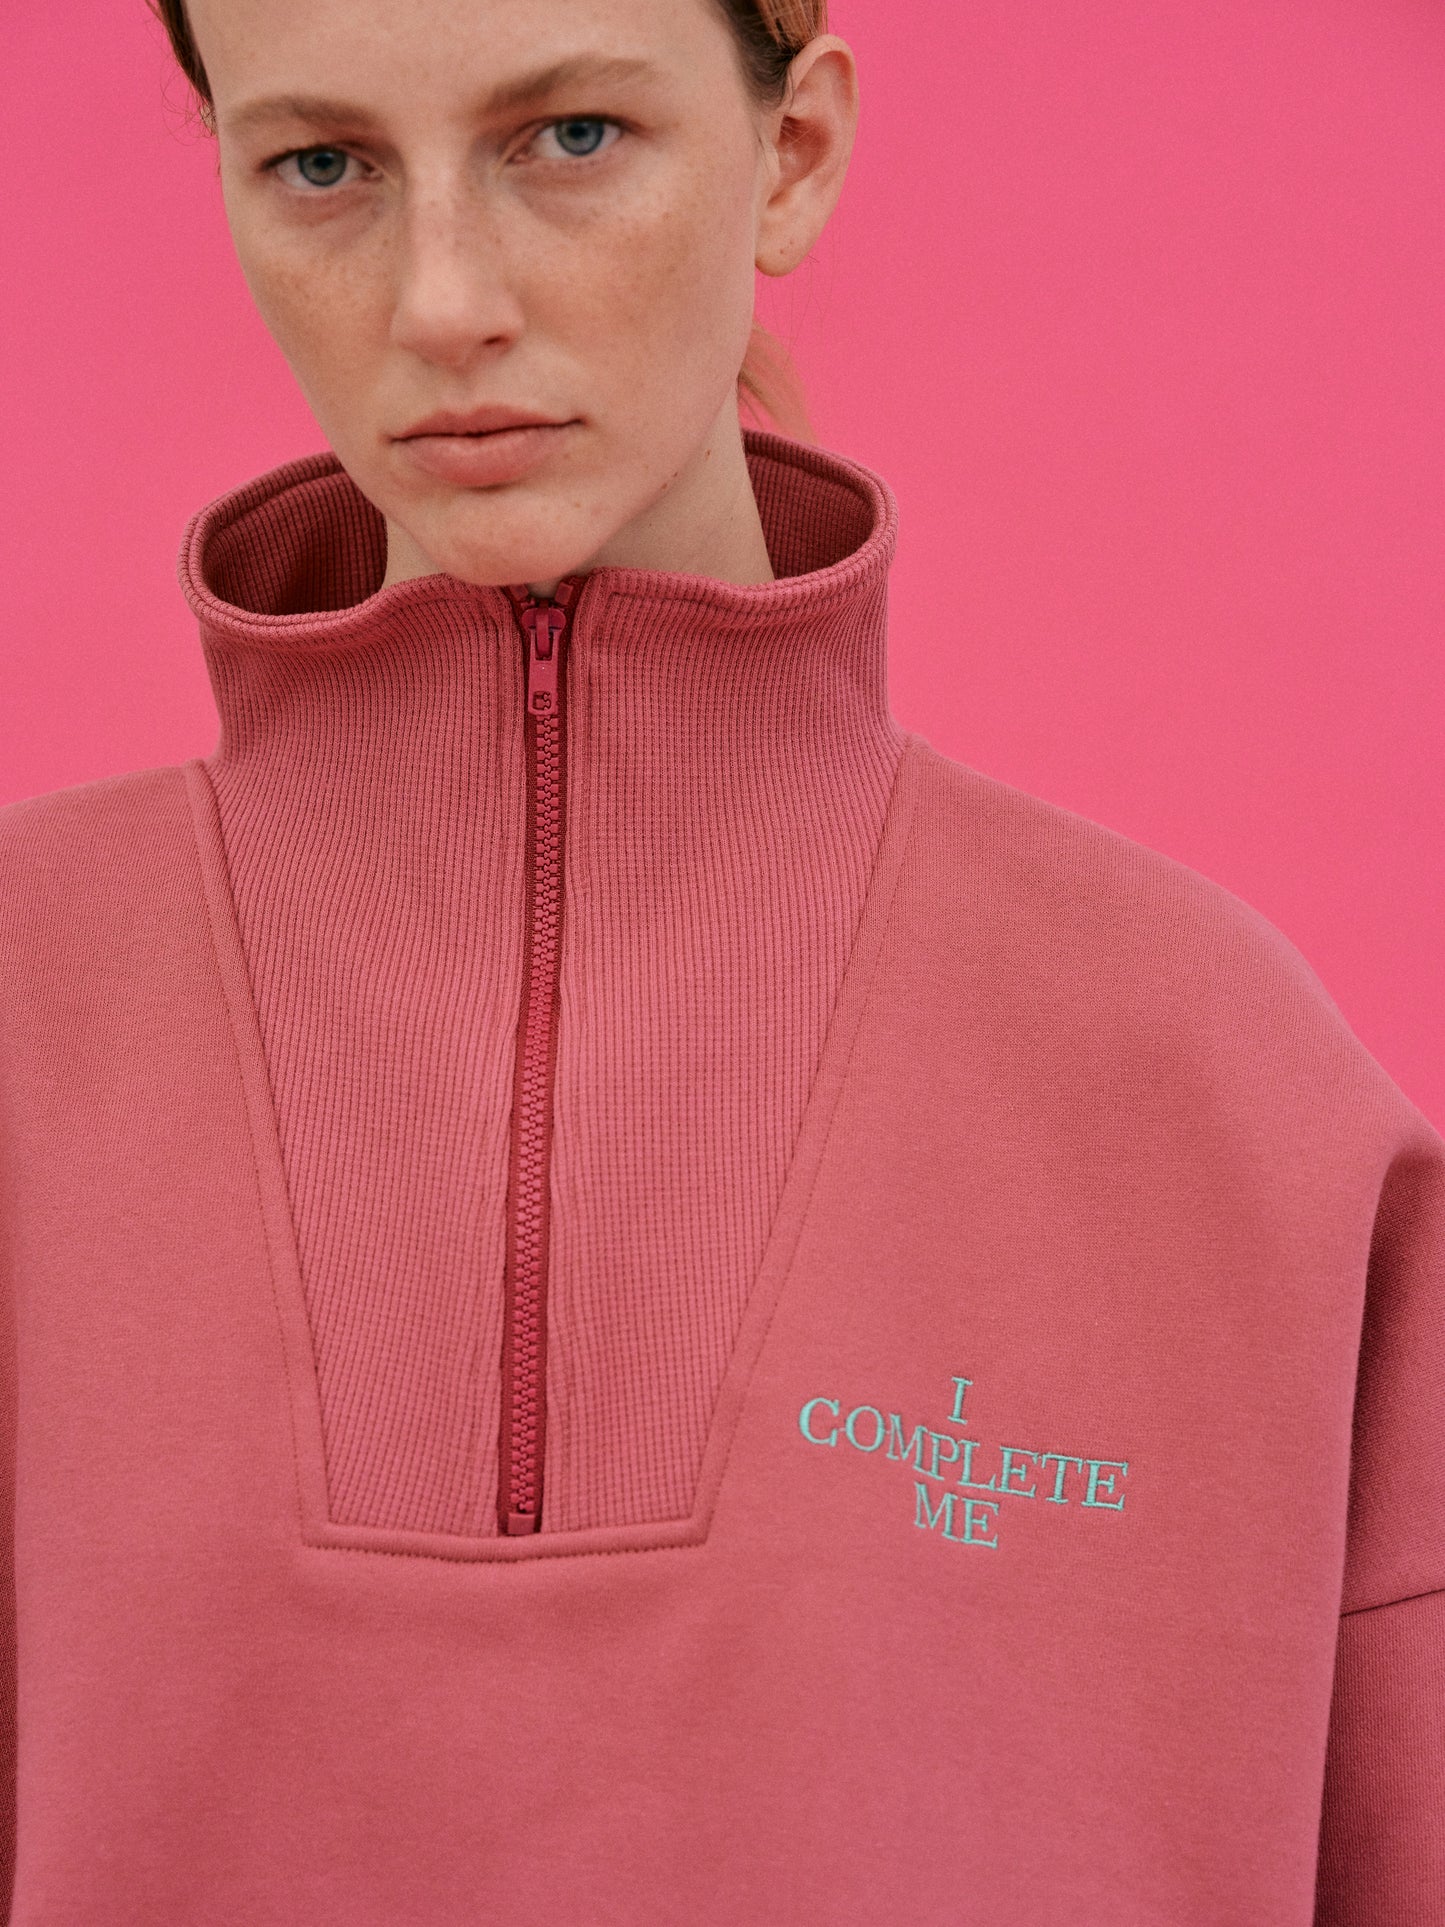 'I Complete Me' Zip Sweatshirt, Cerise